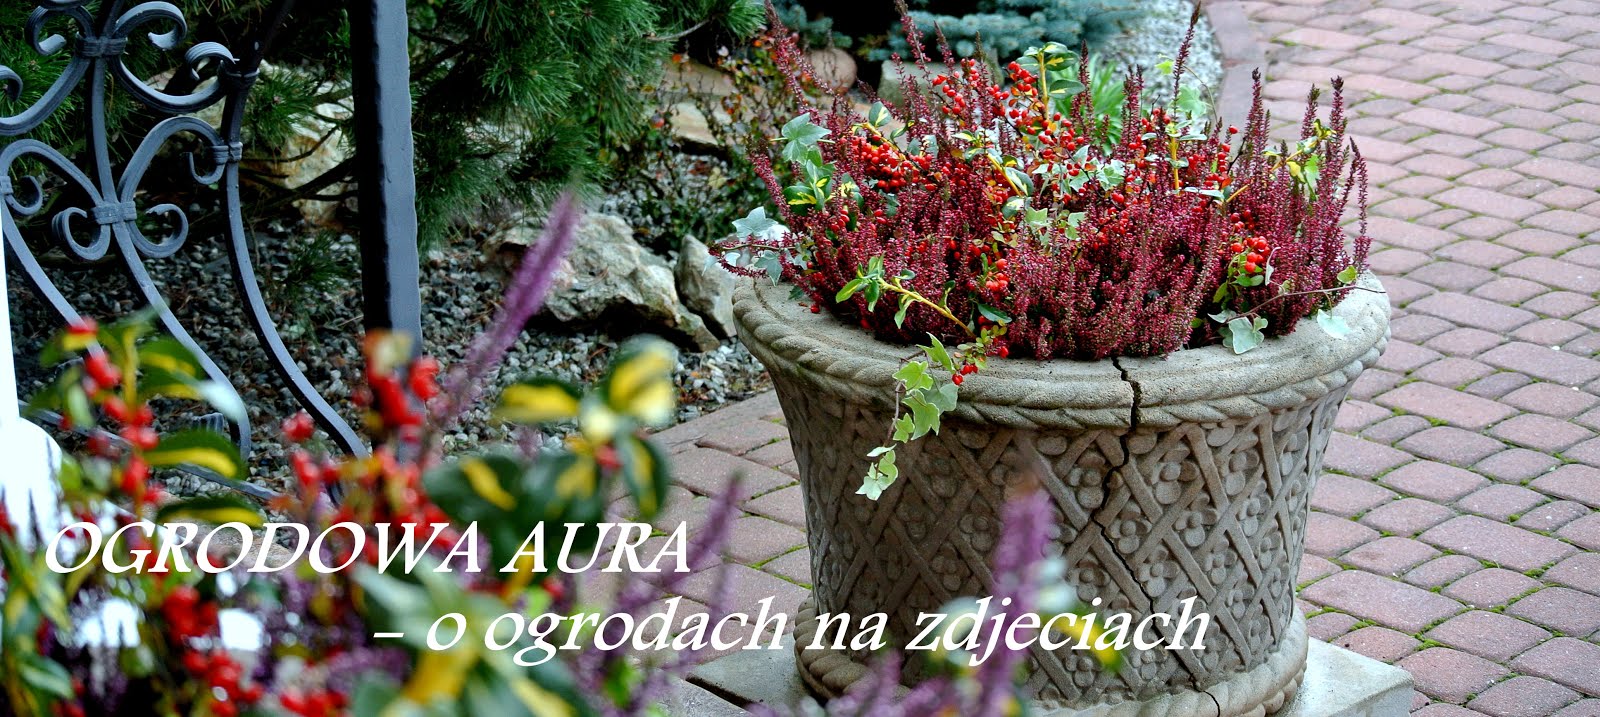 OGRODOWA AURA - o ogrodach na zdjęciach